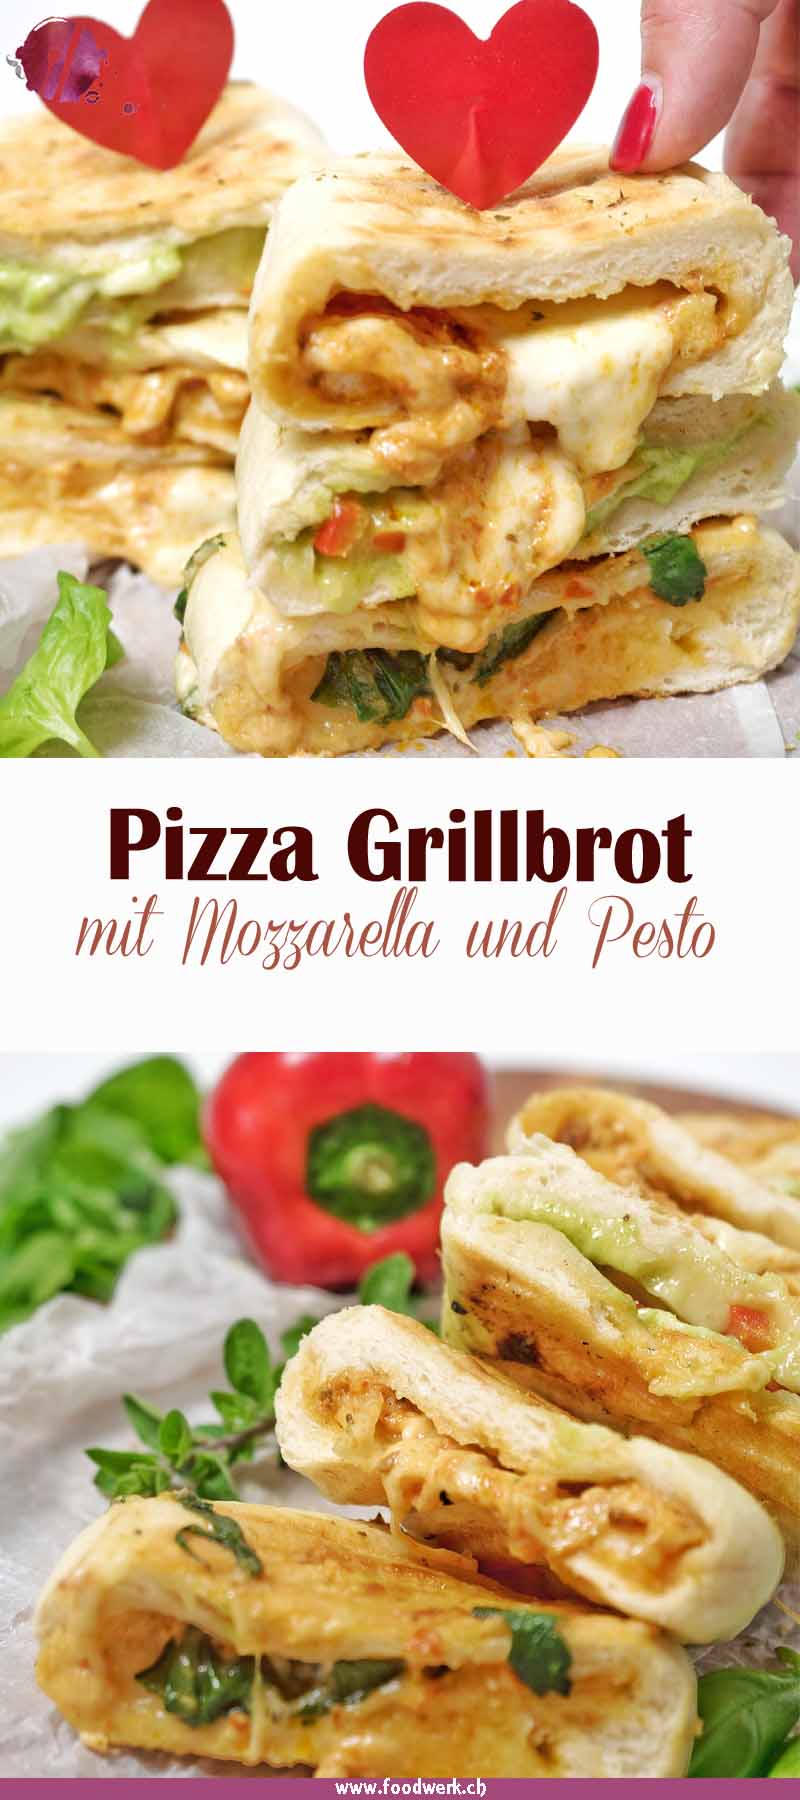 Leckeres Pizza Grillbrot mit Mozzarella, Pesto und frischem Gemüse.